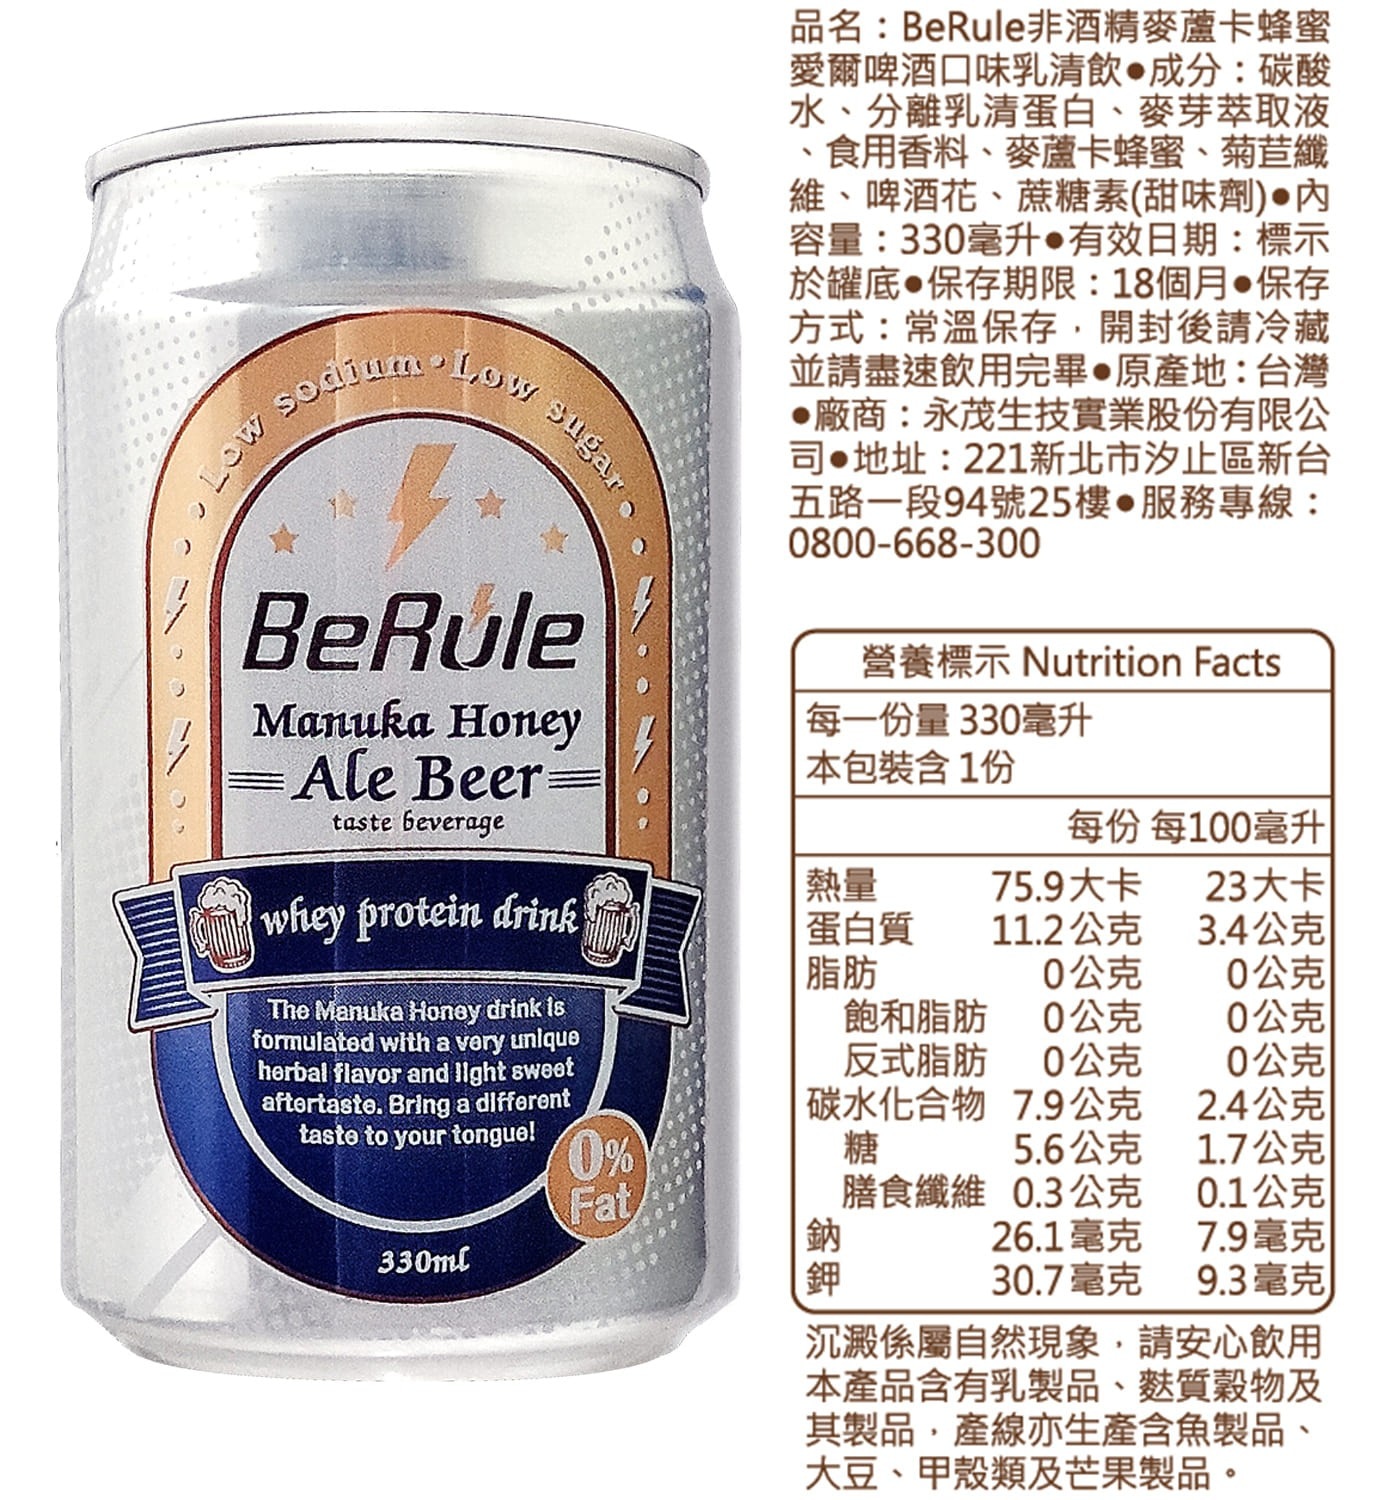 BeRule 非酒精麥蘆卡蜂蜜愛爾啤酒口味乳清飲，解癮還能補蛋白，無負擔0酒精，高蛋白10g蛋白質，低熱量1/2熱量。